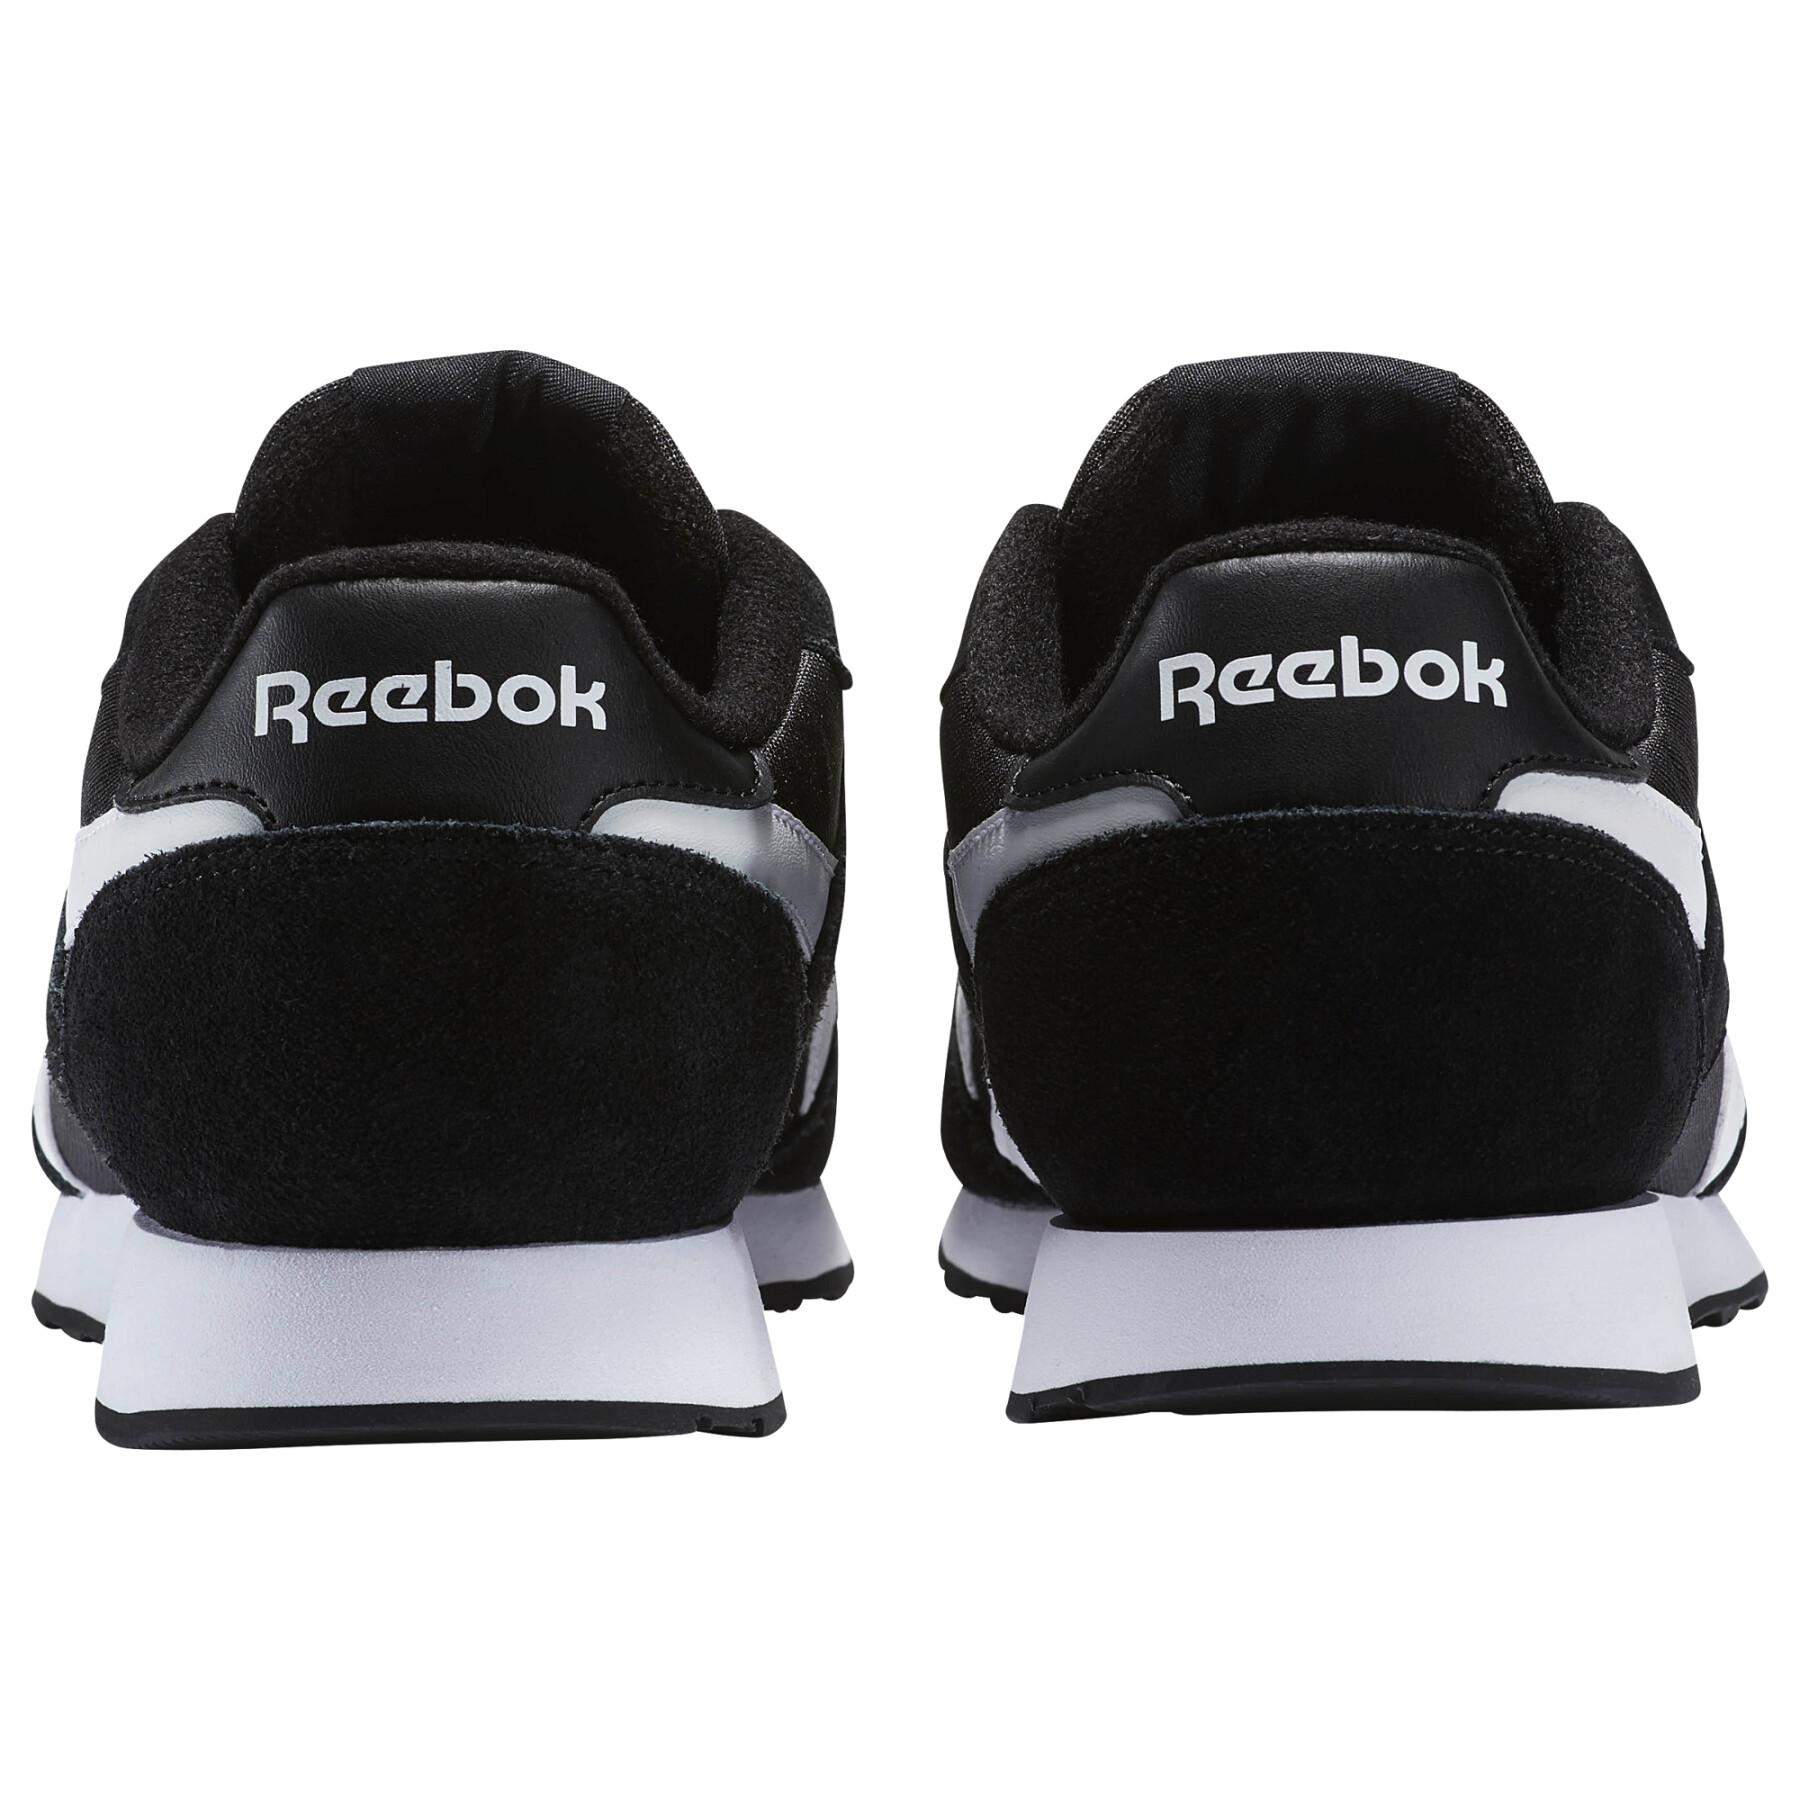 Schuhe Reebok Royal Ultra